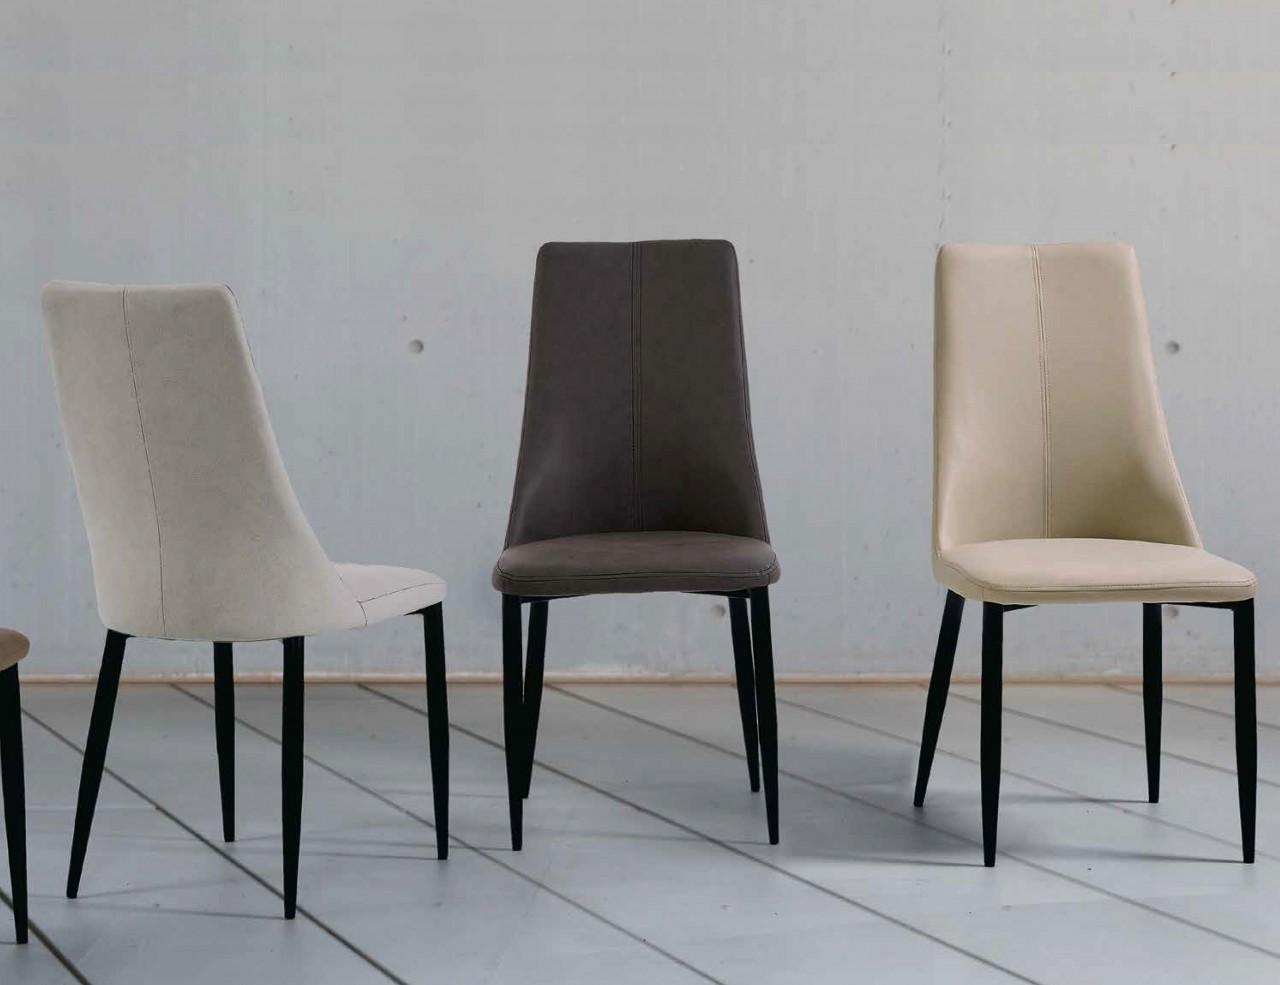 A cadeira Leti é o complemento perfeito para a sua cozinha. Com design moderno e estrutura resistente, ela oferece o máximo em conforto e beleza!